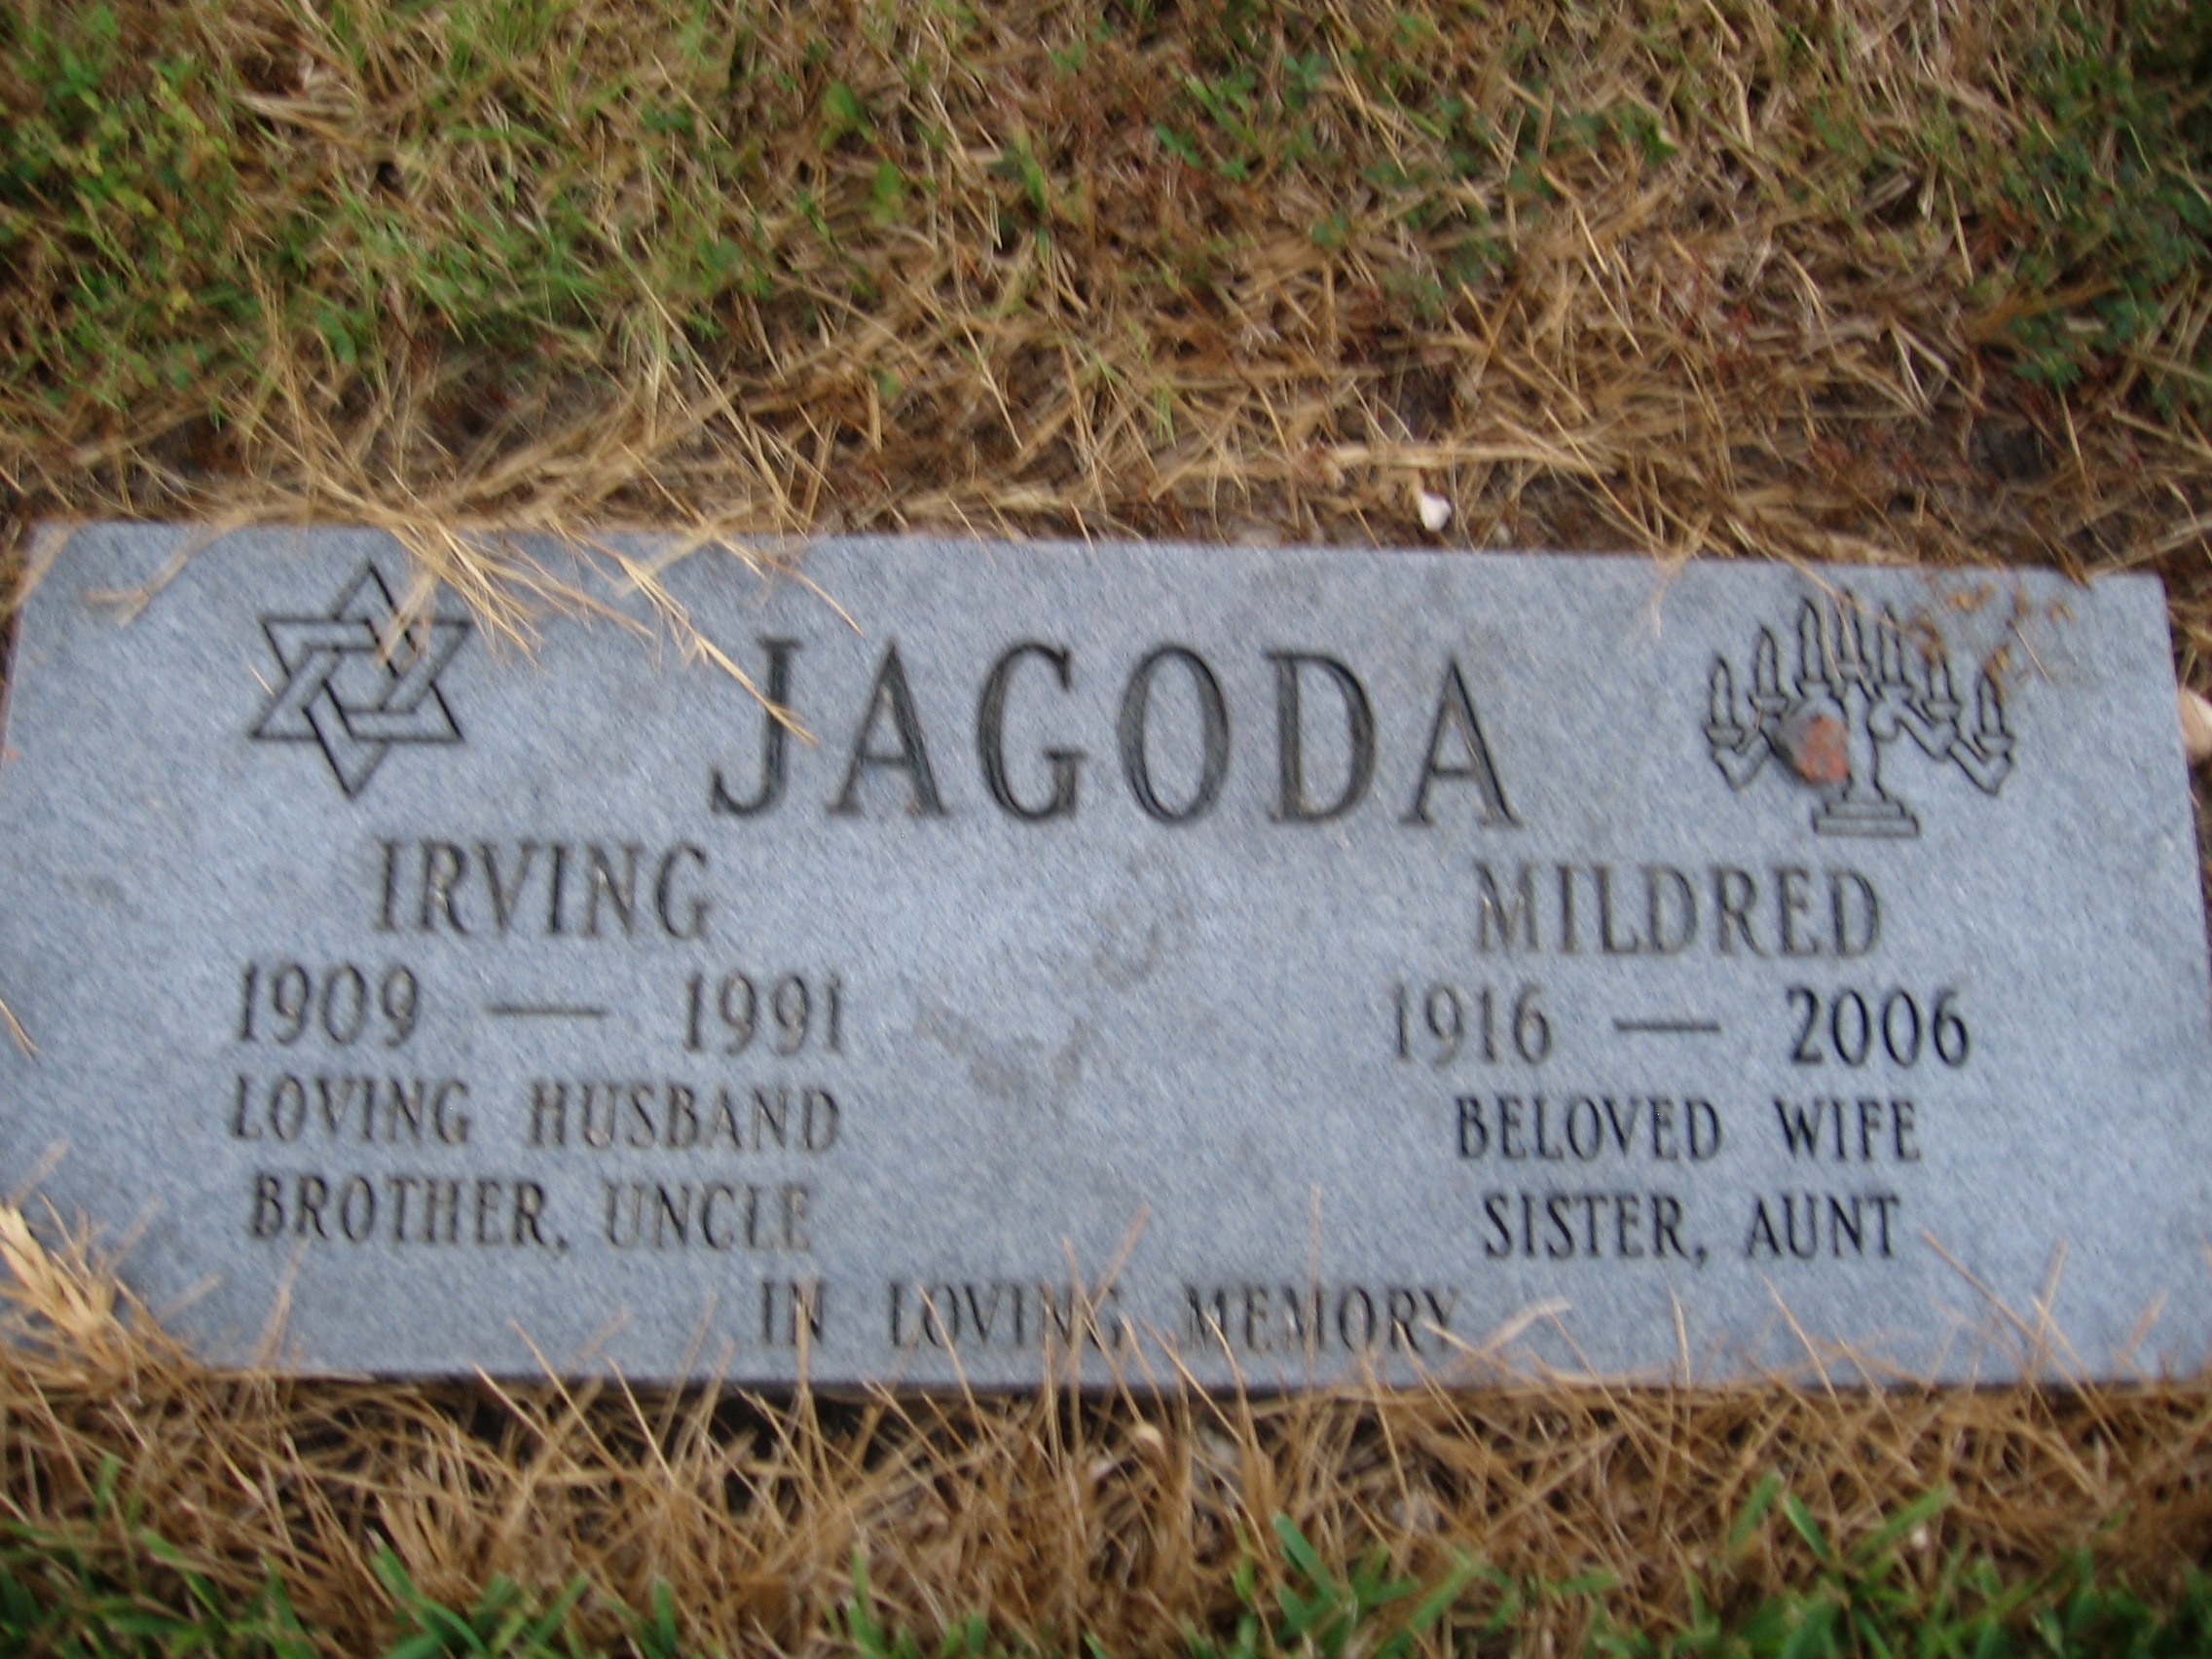 Irving Jagoda